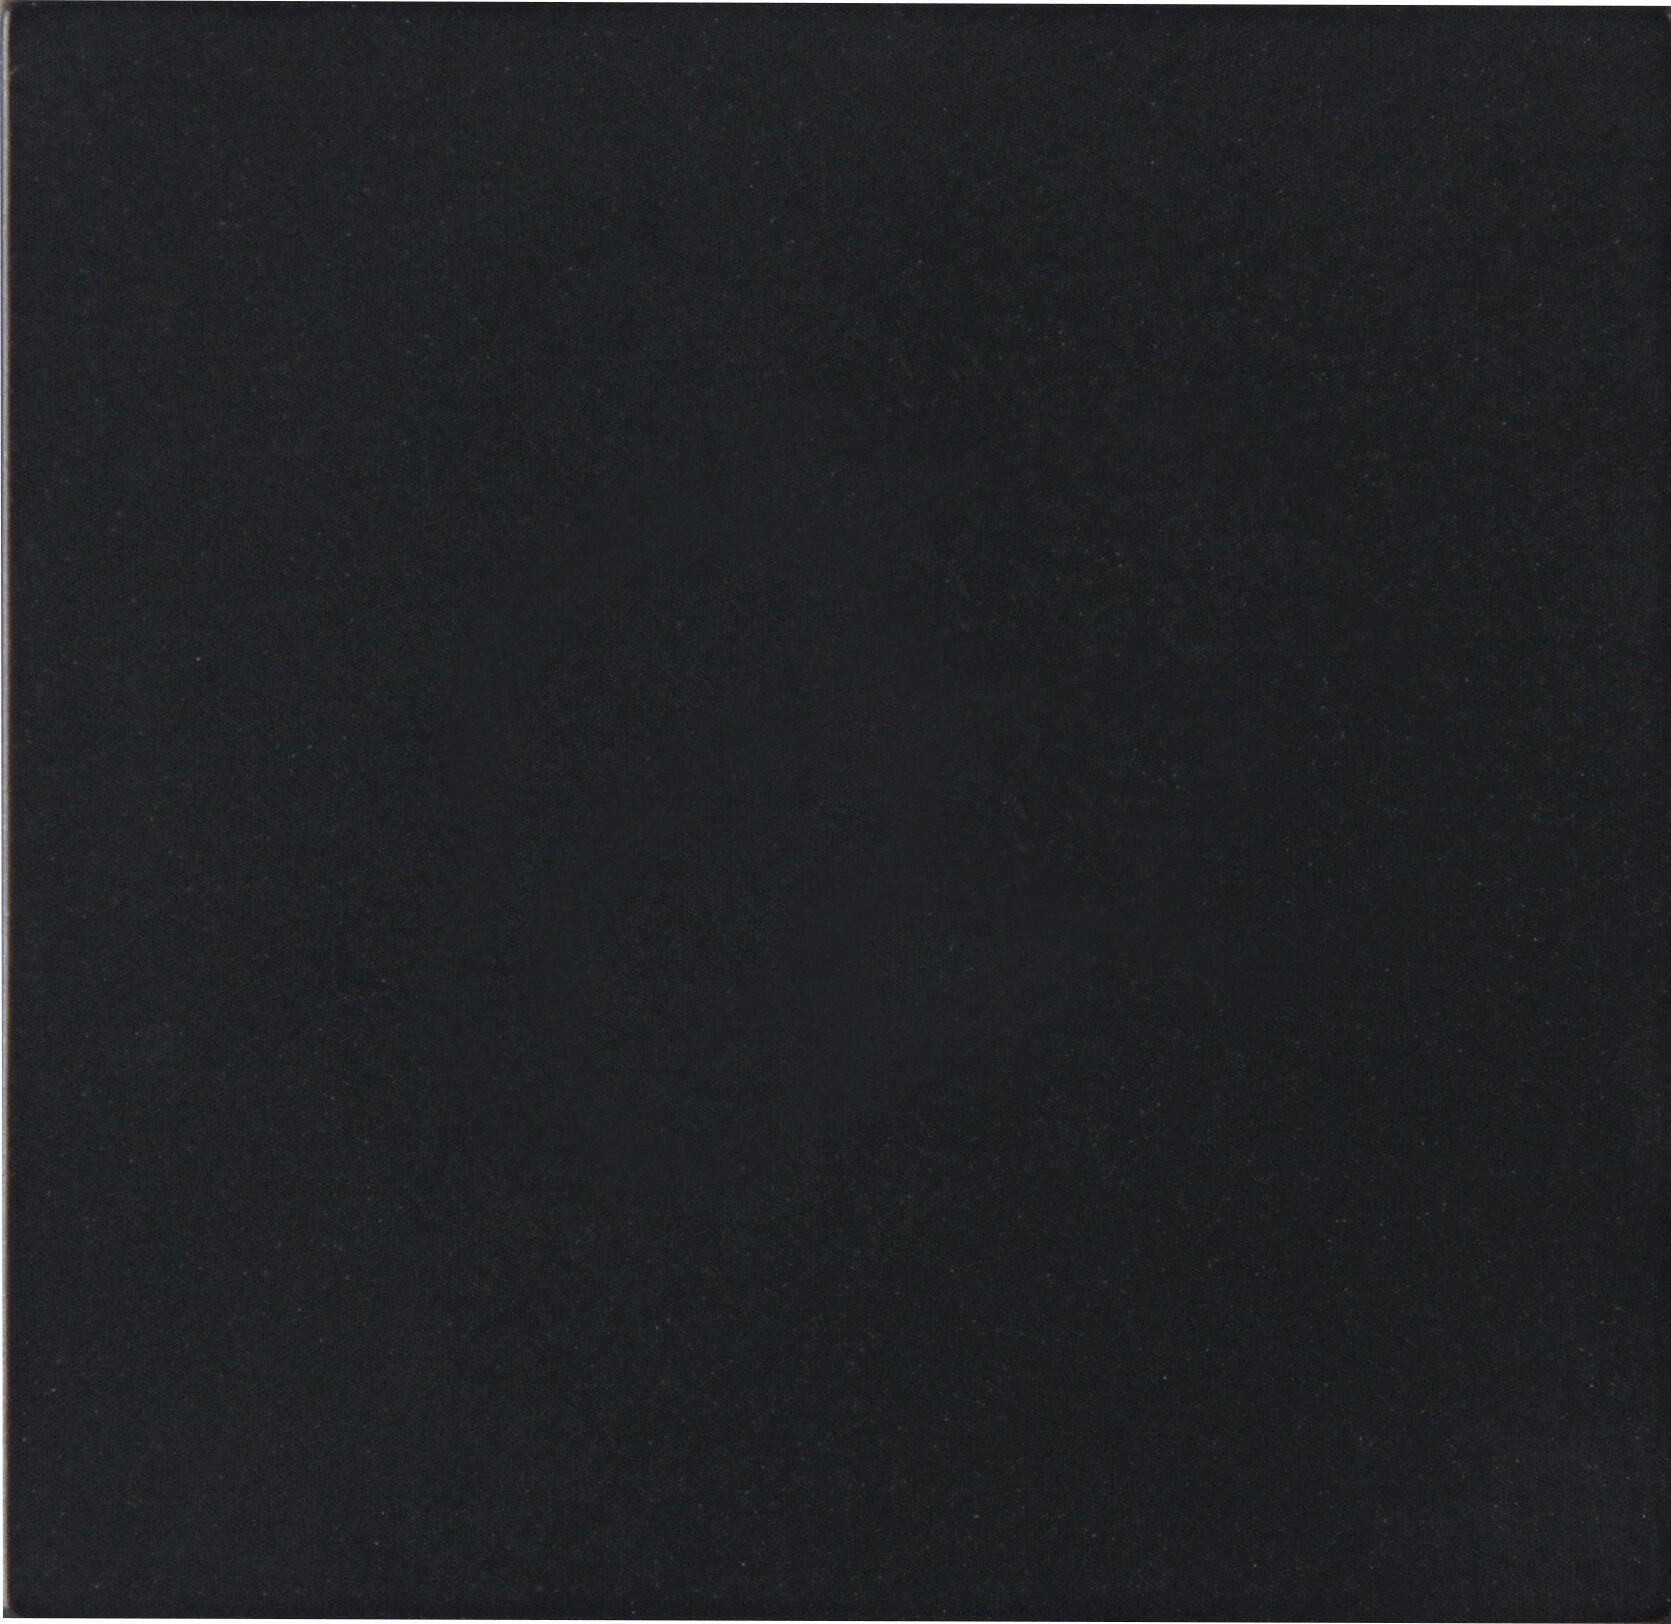 Kopp 490050007 HK07 - Flächenwippe ohne Linse, Farbe: schwarz matt